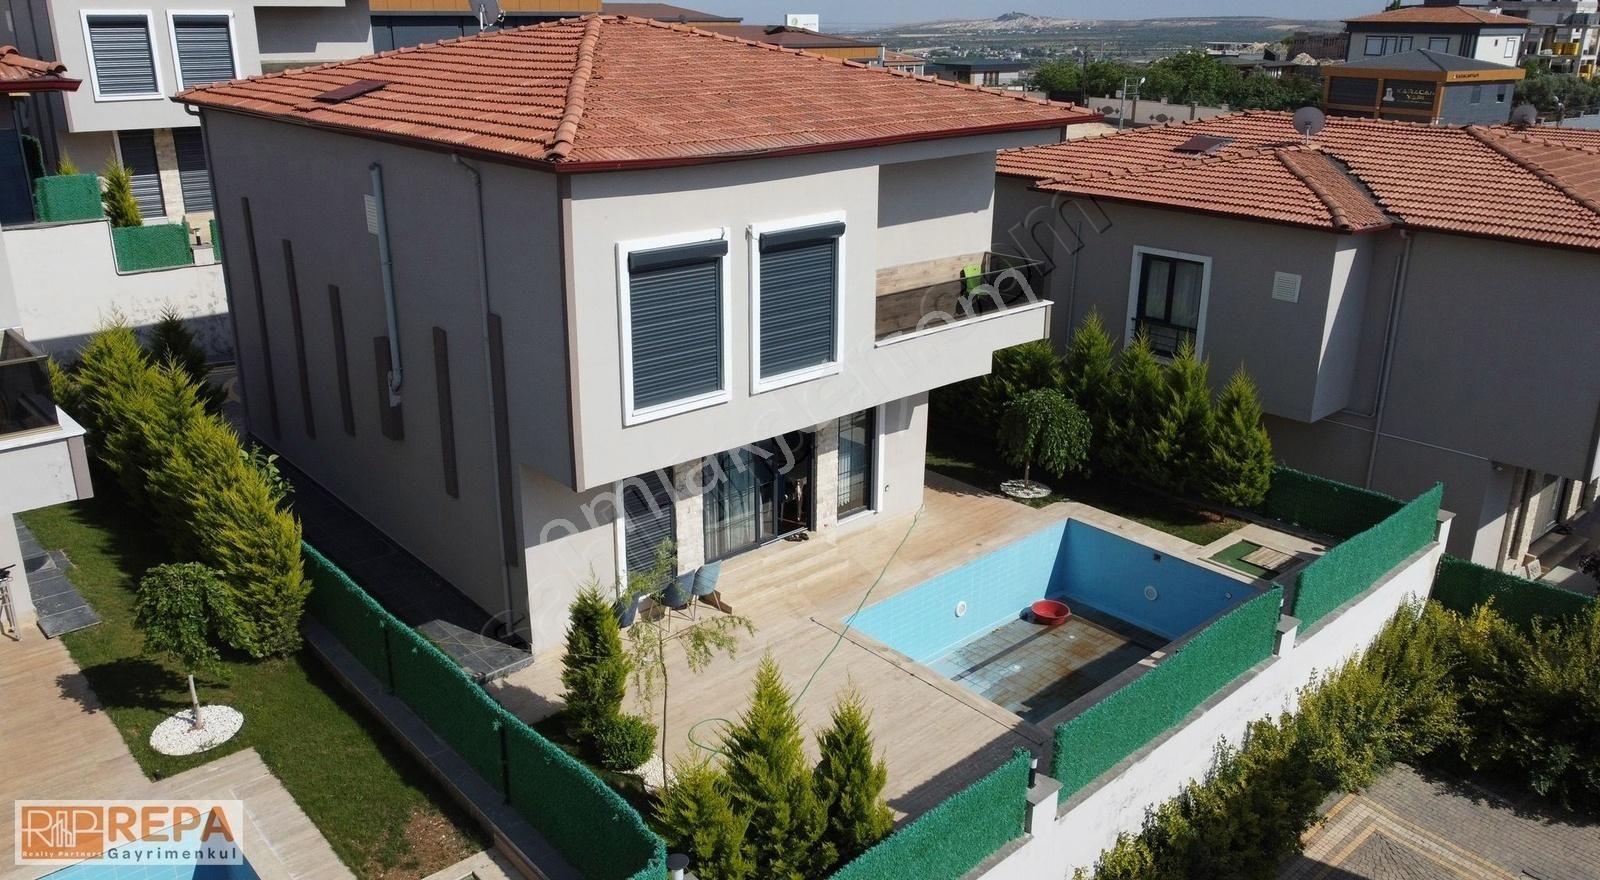 Oğuzeli Şahinbey Satılık Villa REPA GAYRİMENKUL BERFİN ŞAHİN'DEN ASİLZADE' DE SATILIK VİLLA